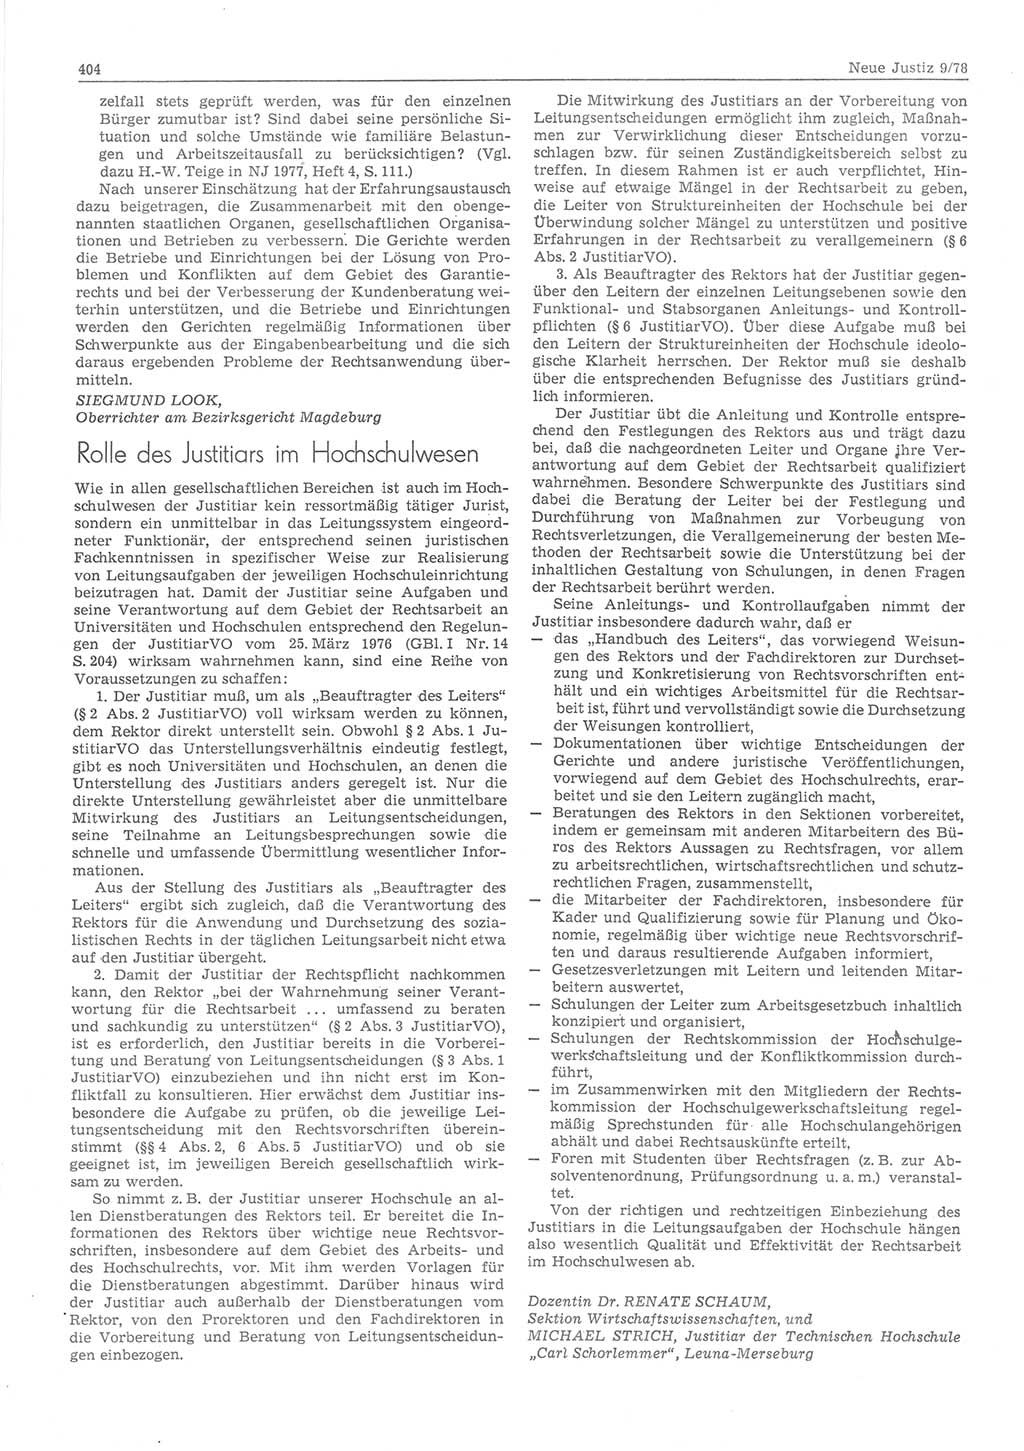 Neue Justiz (NJ), Zeitschrift für sozialistisches Recht und Gesetzlichkeit [Deutsche Demokratische Republik (DDR)], 32. Jahrgang 1978, Seite 404 (NJ DDR 1978, S. 404)